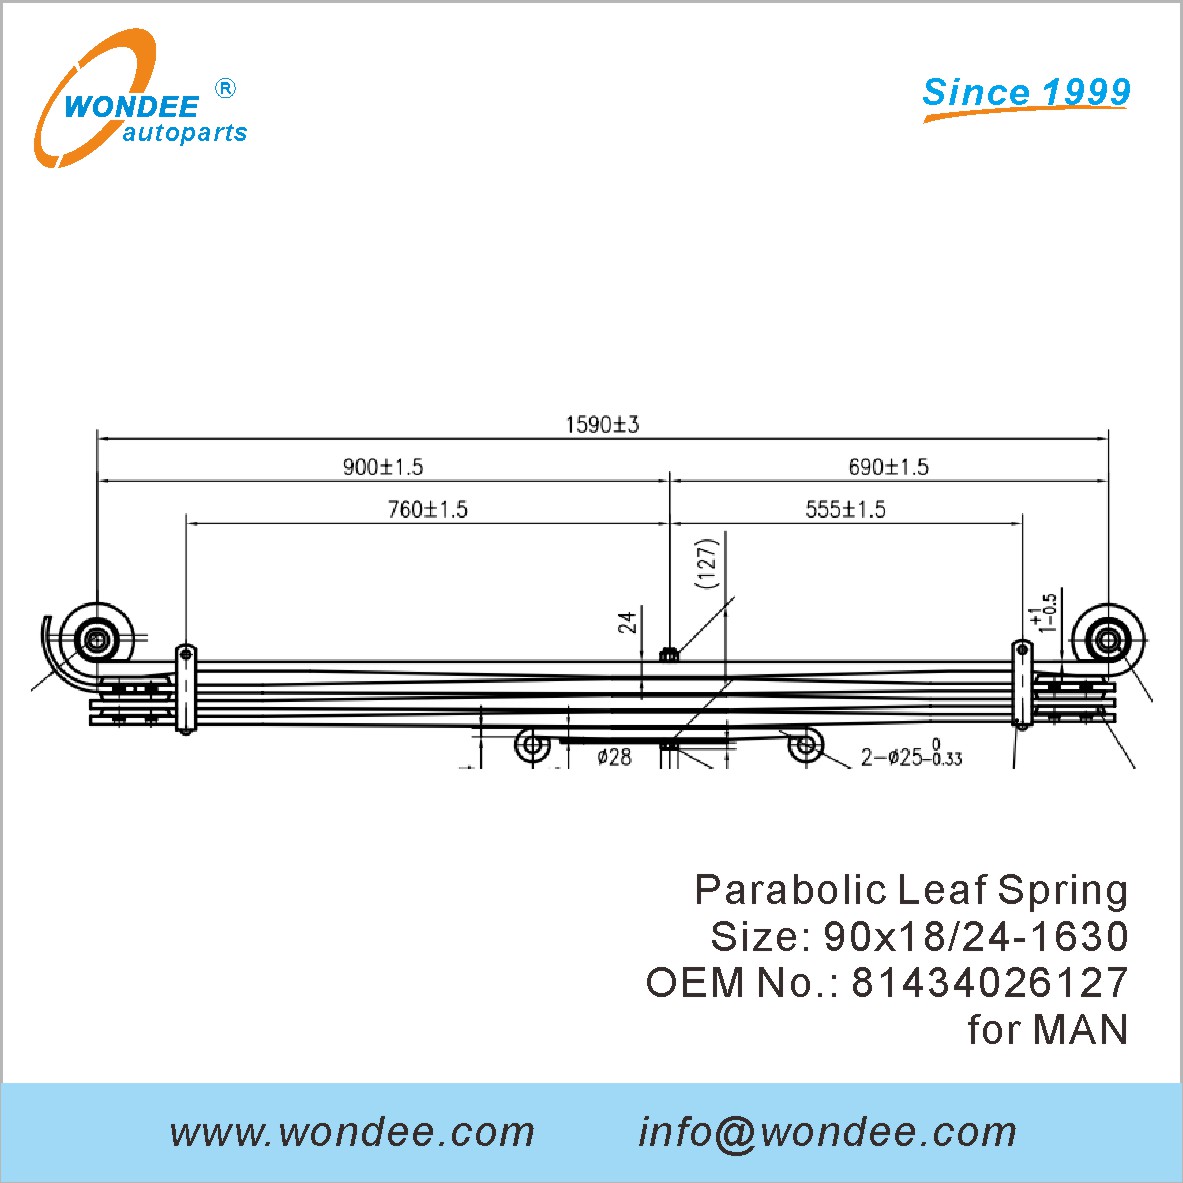 WONDEE heavy duty parabolic Leaf Spring OEM 81434026127 for MAN